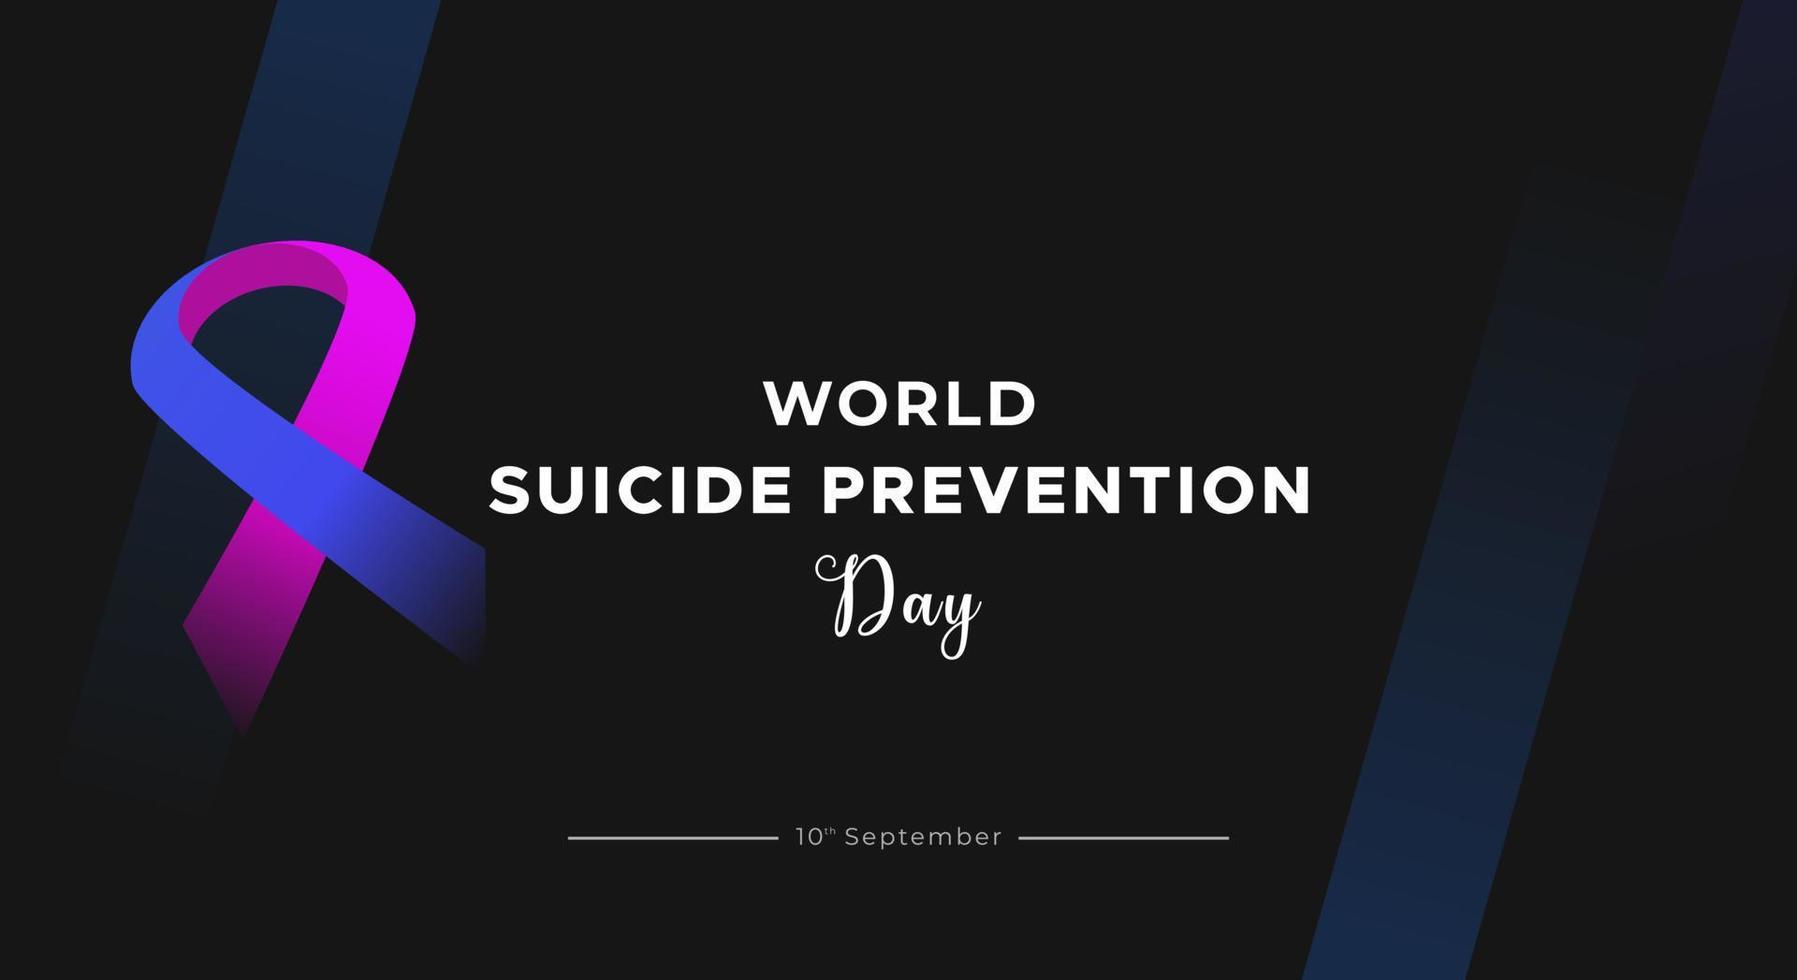 journée mondiale de la prévention du suicide. conception de fond de couleur foncée avec texte, bannière, santé mentale vecteur